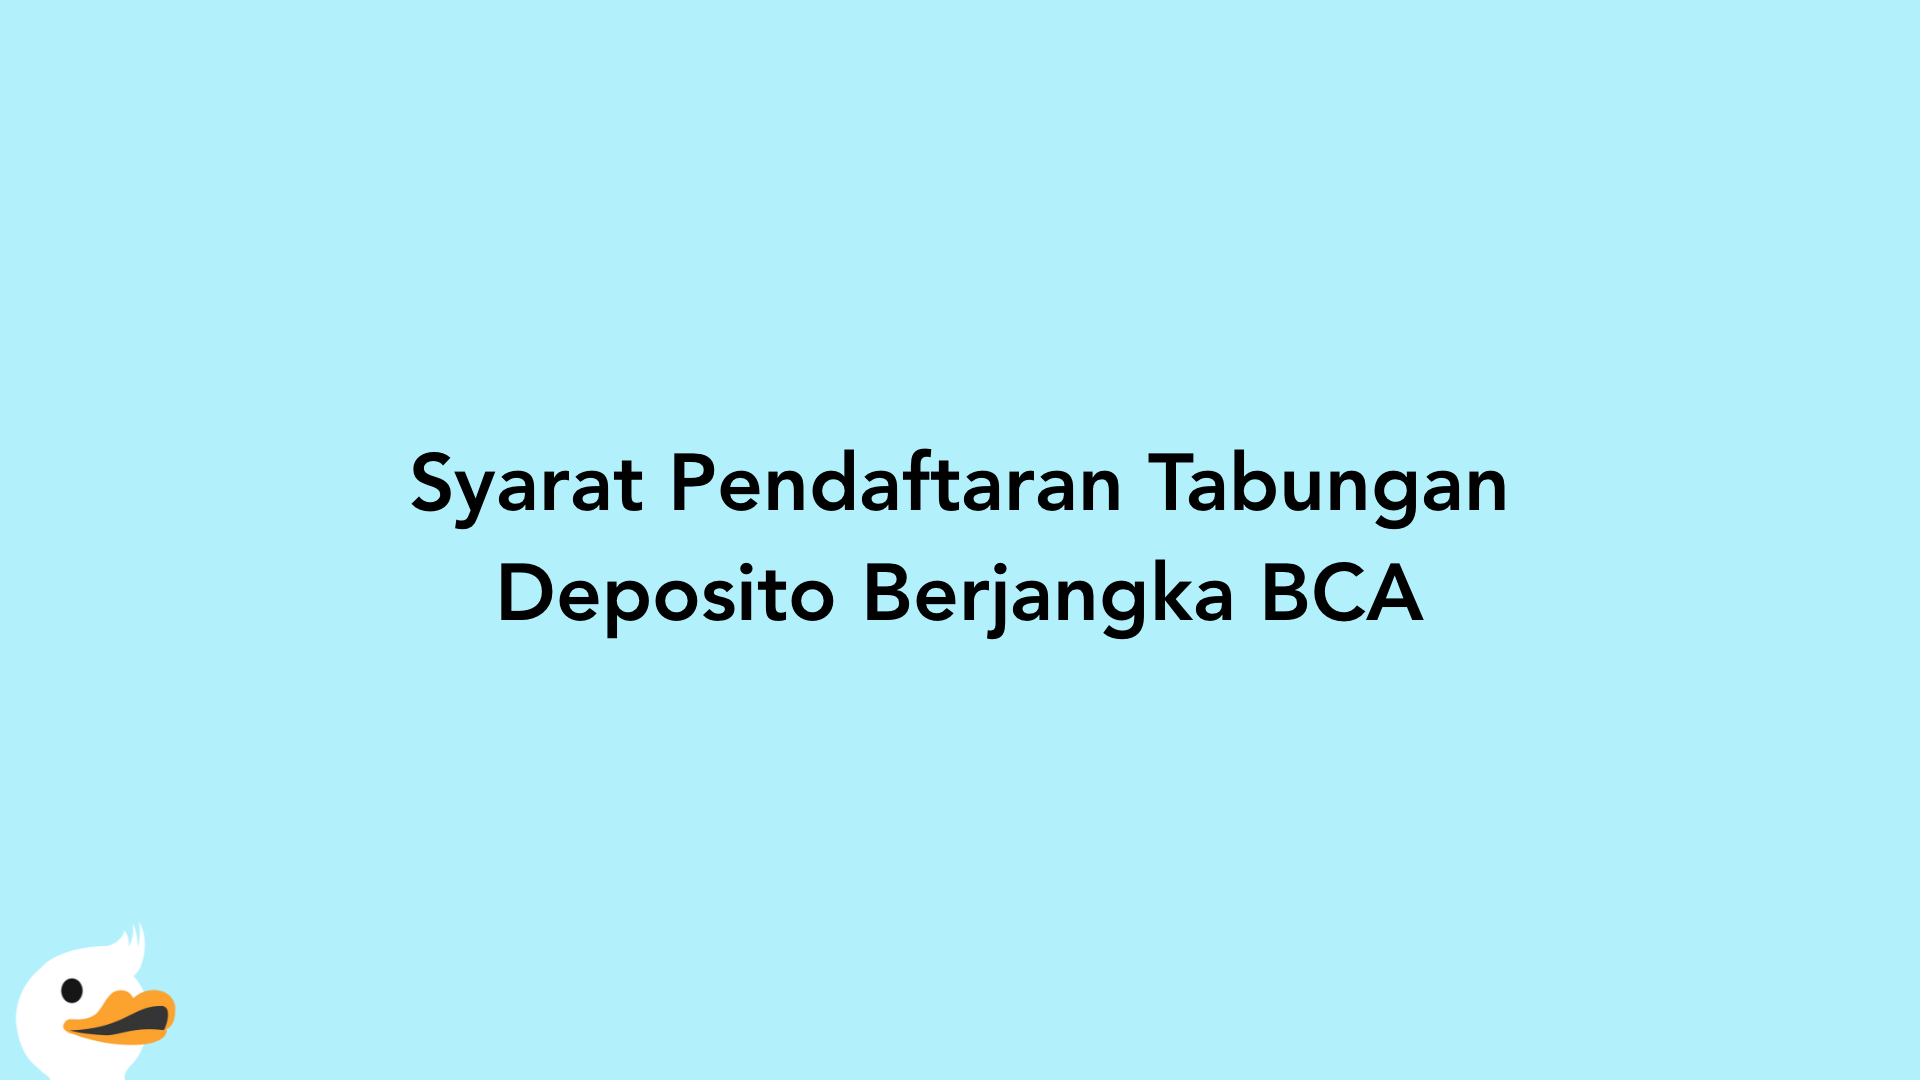 Syarat Pendaftaran Tabungan Deposito Berjangka BCA